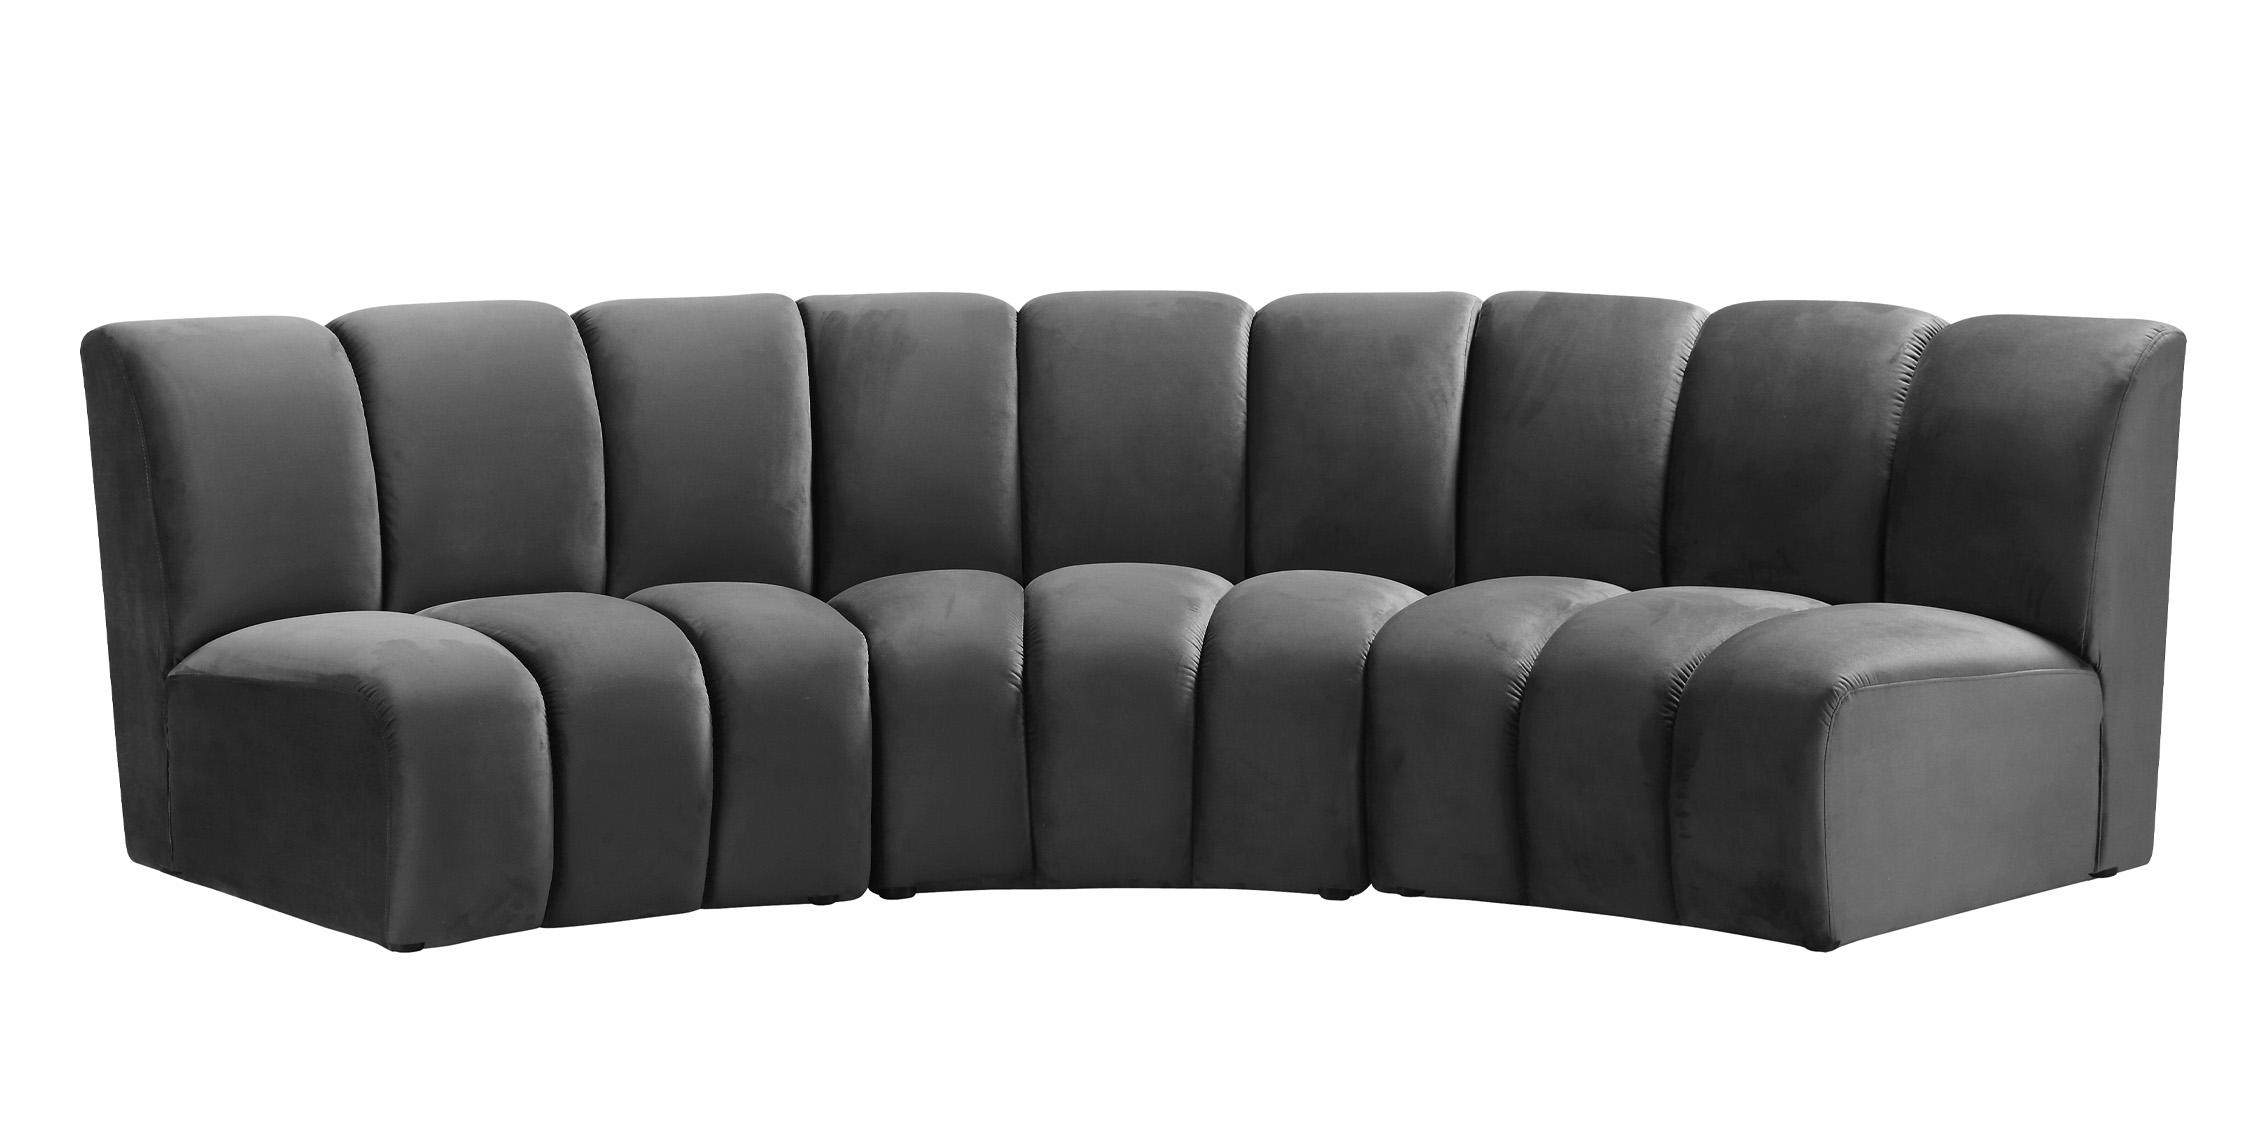 

    
638Grey-3PC Meridian Furniture Modular Sectional Sofa
